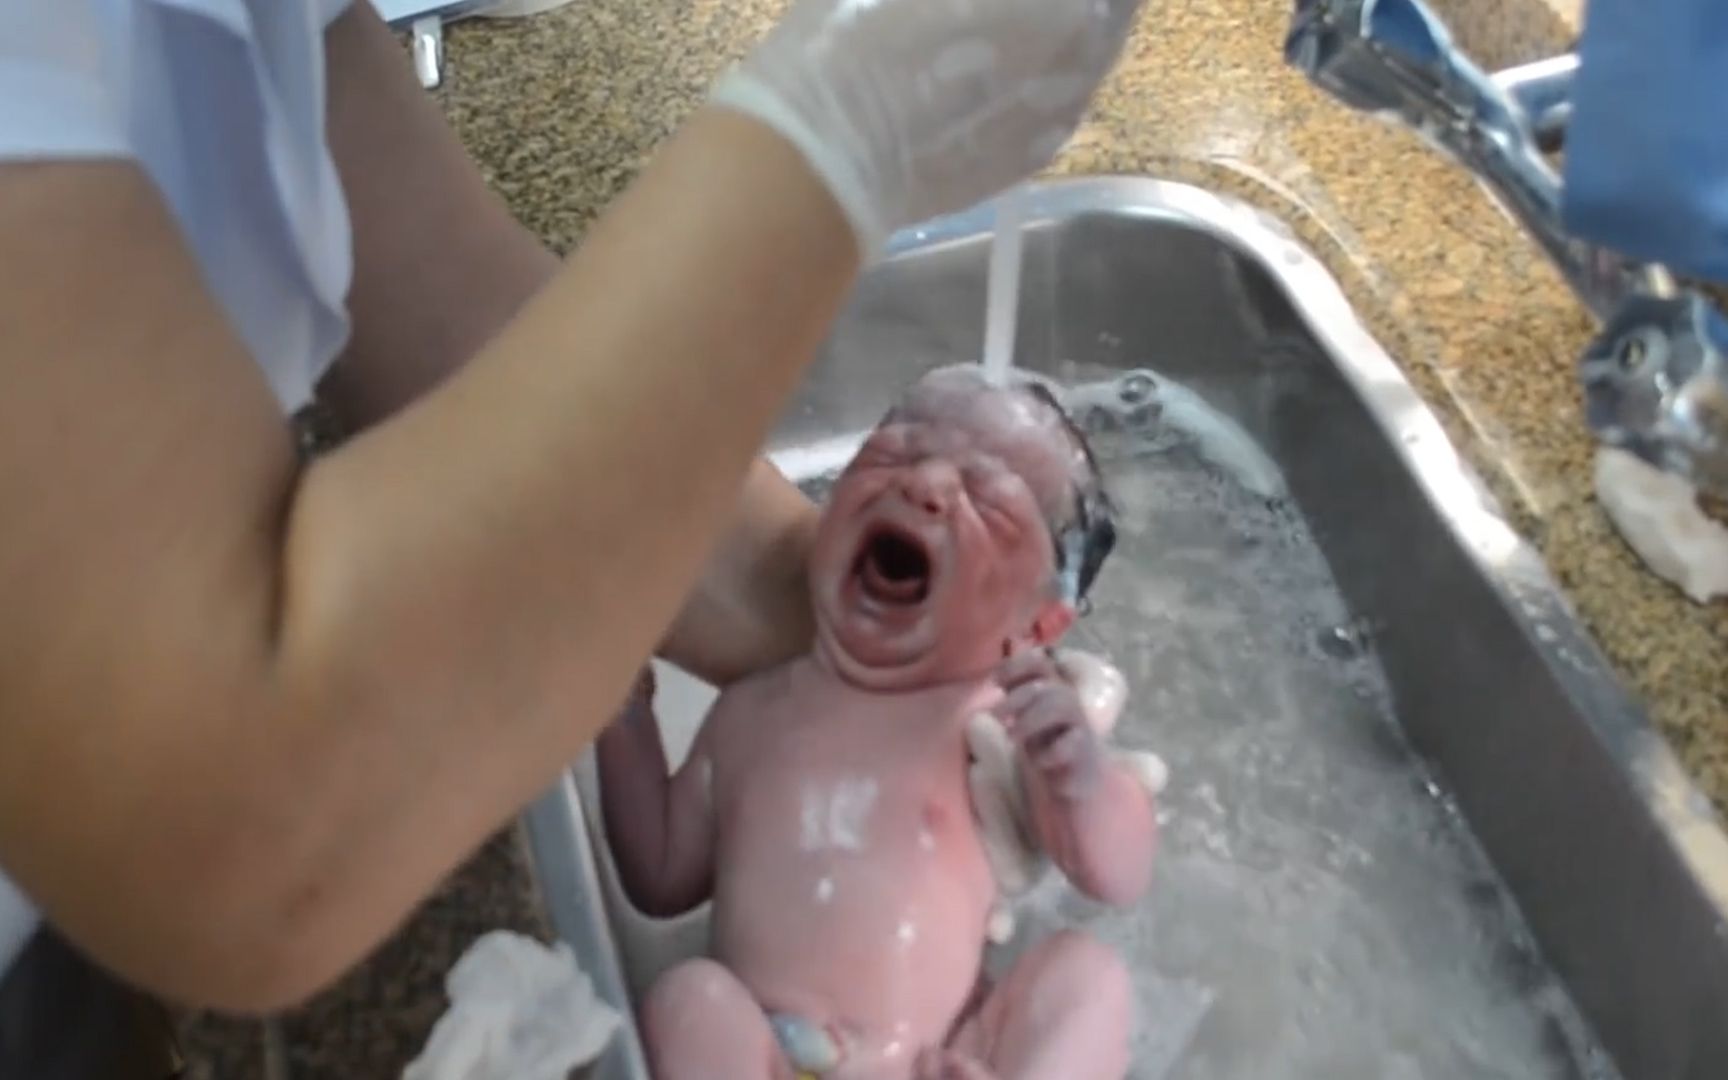 产科护士把新生儿直接放水龙头下冲洗，手法粗鲁似洗菜，爸爸怒了